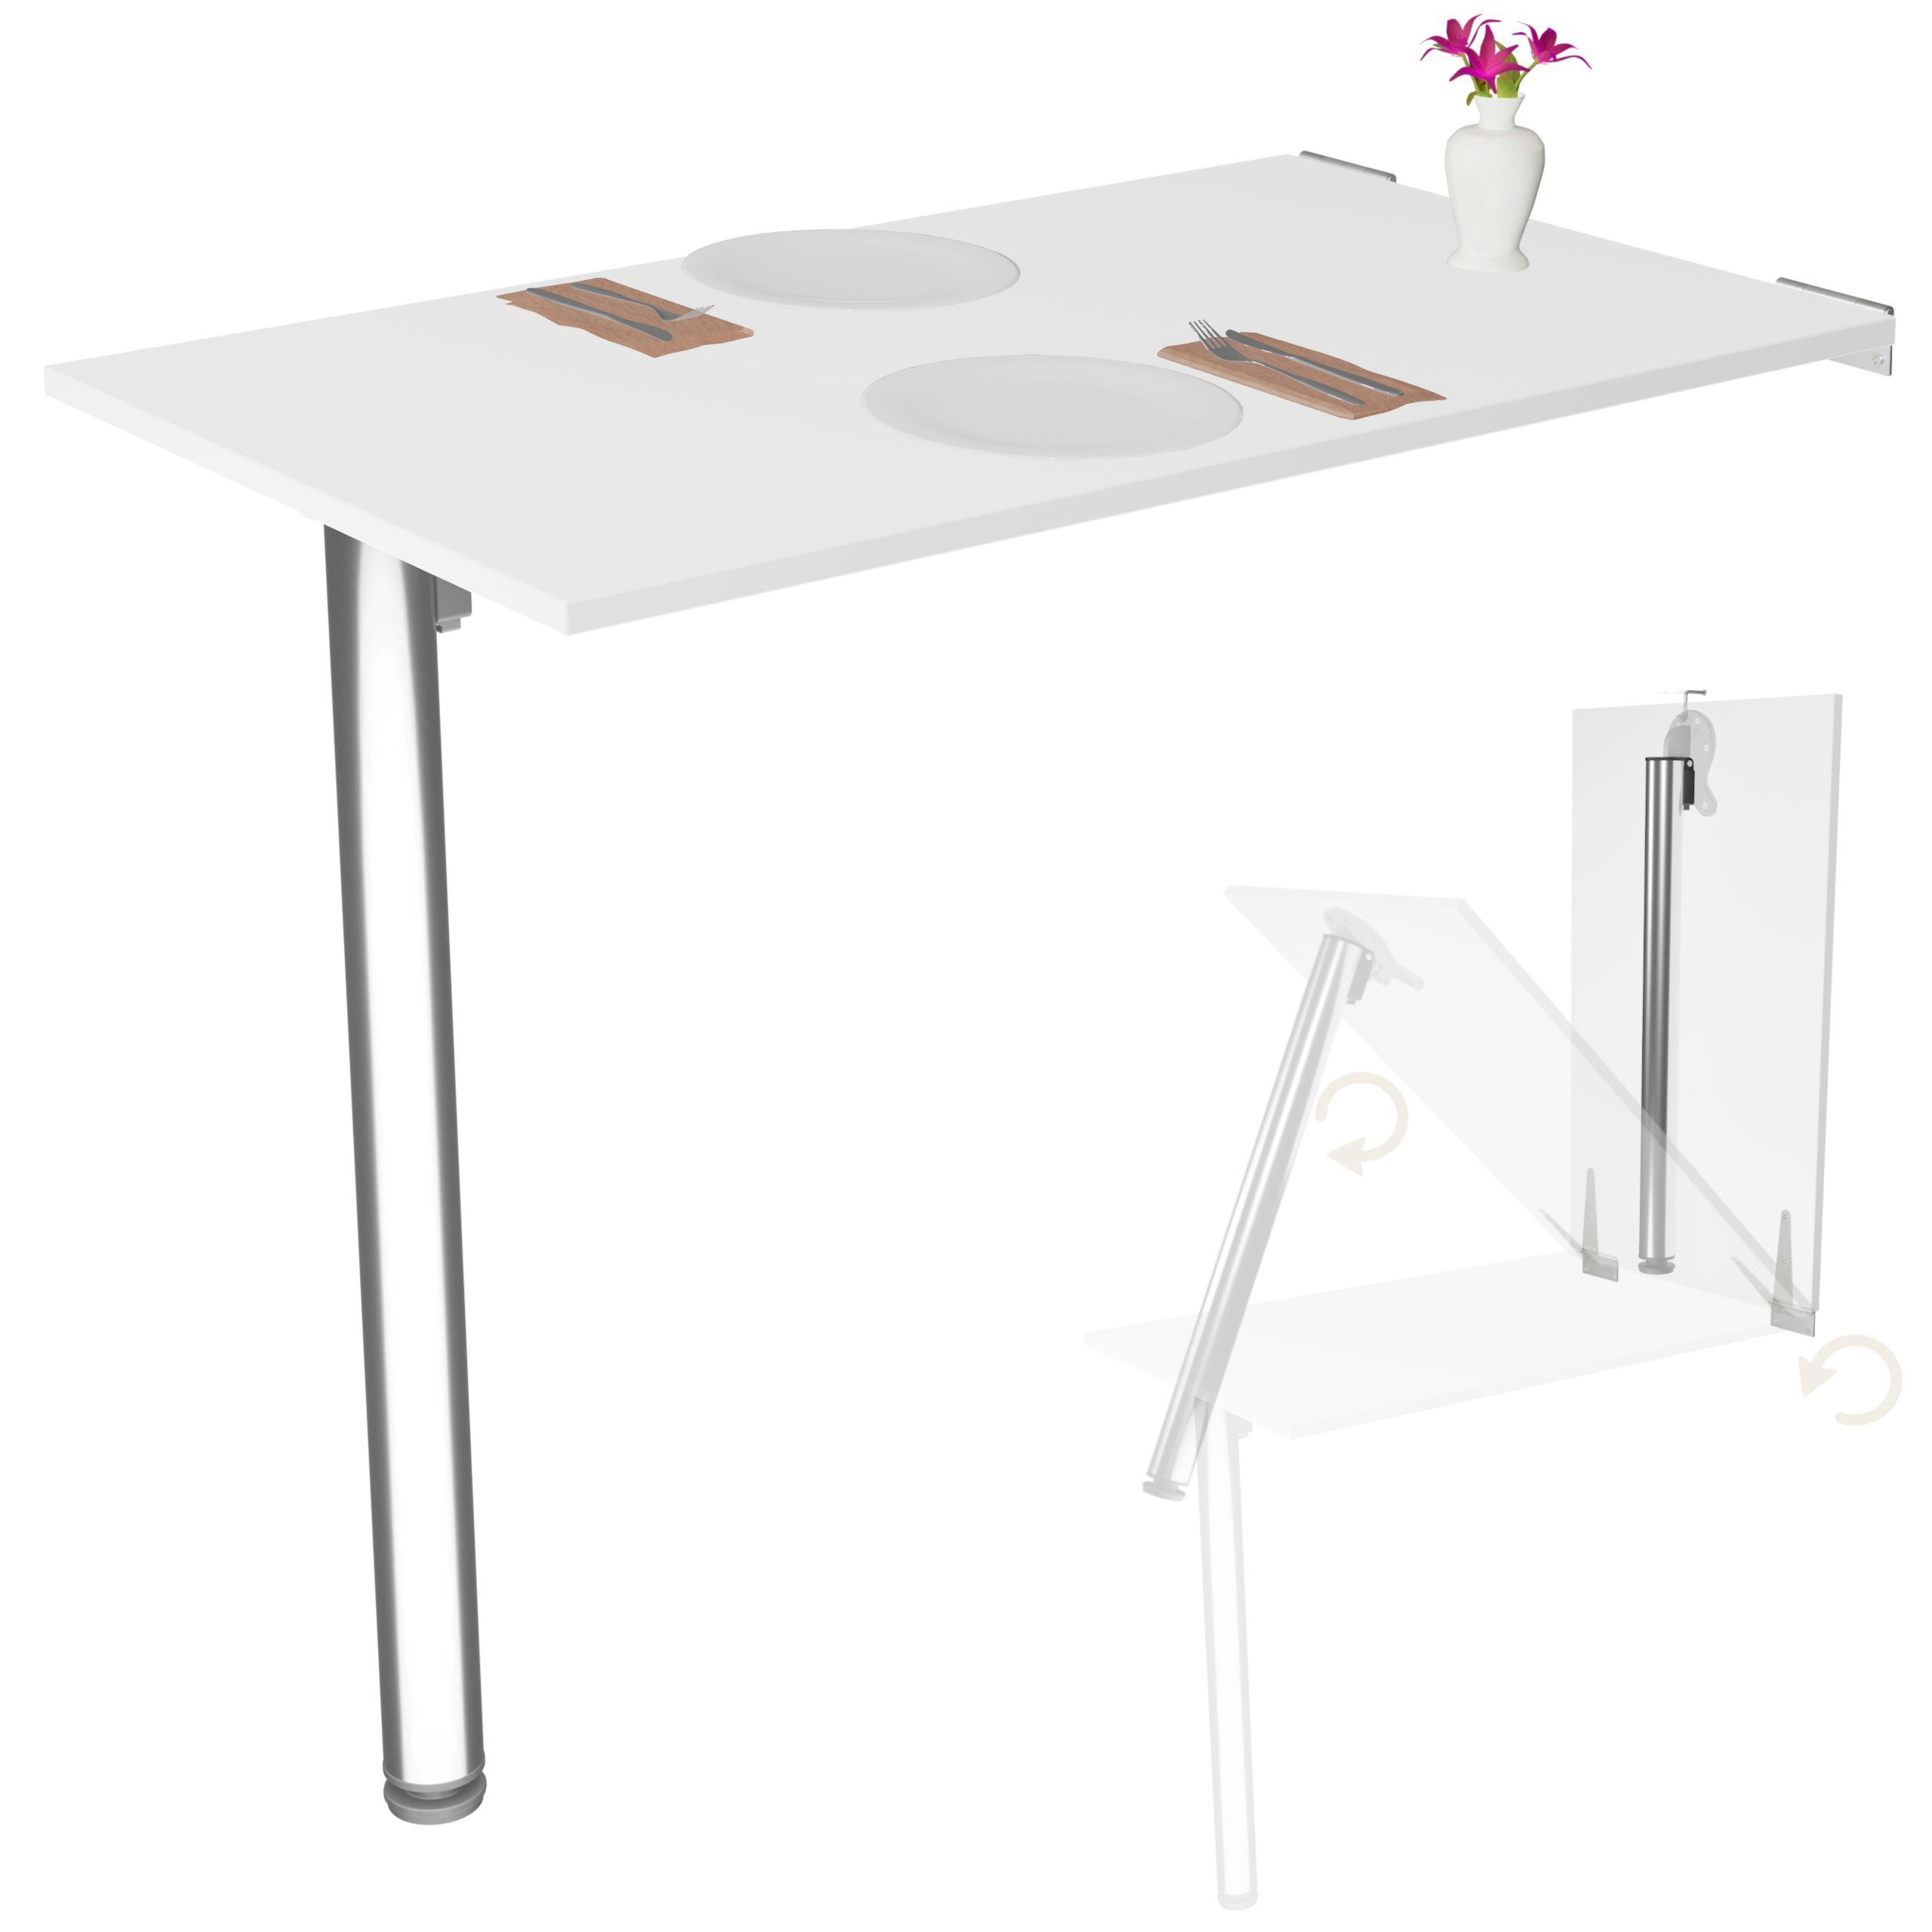 Superschön KDR Produktgestaltung Klapptisch 80x50 Tisch, Weiß Küchentisch Wand Wandklapptisch Esstisch Schreibtisch